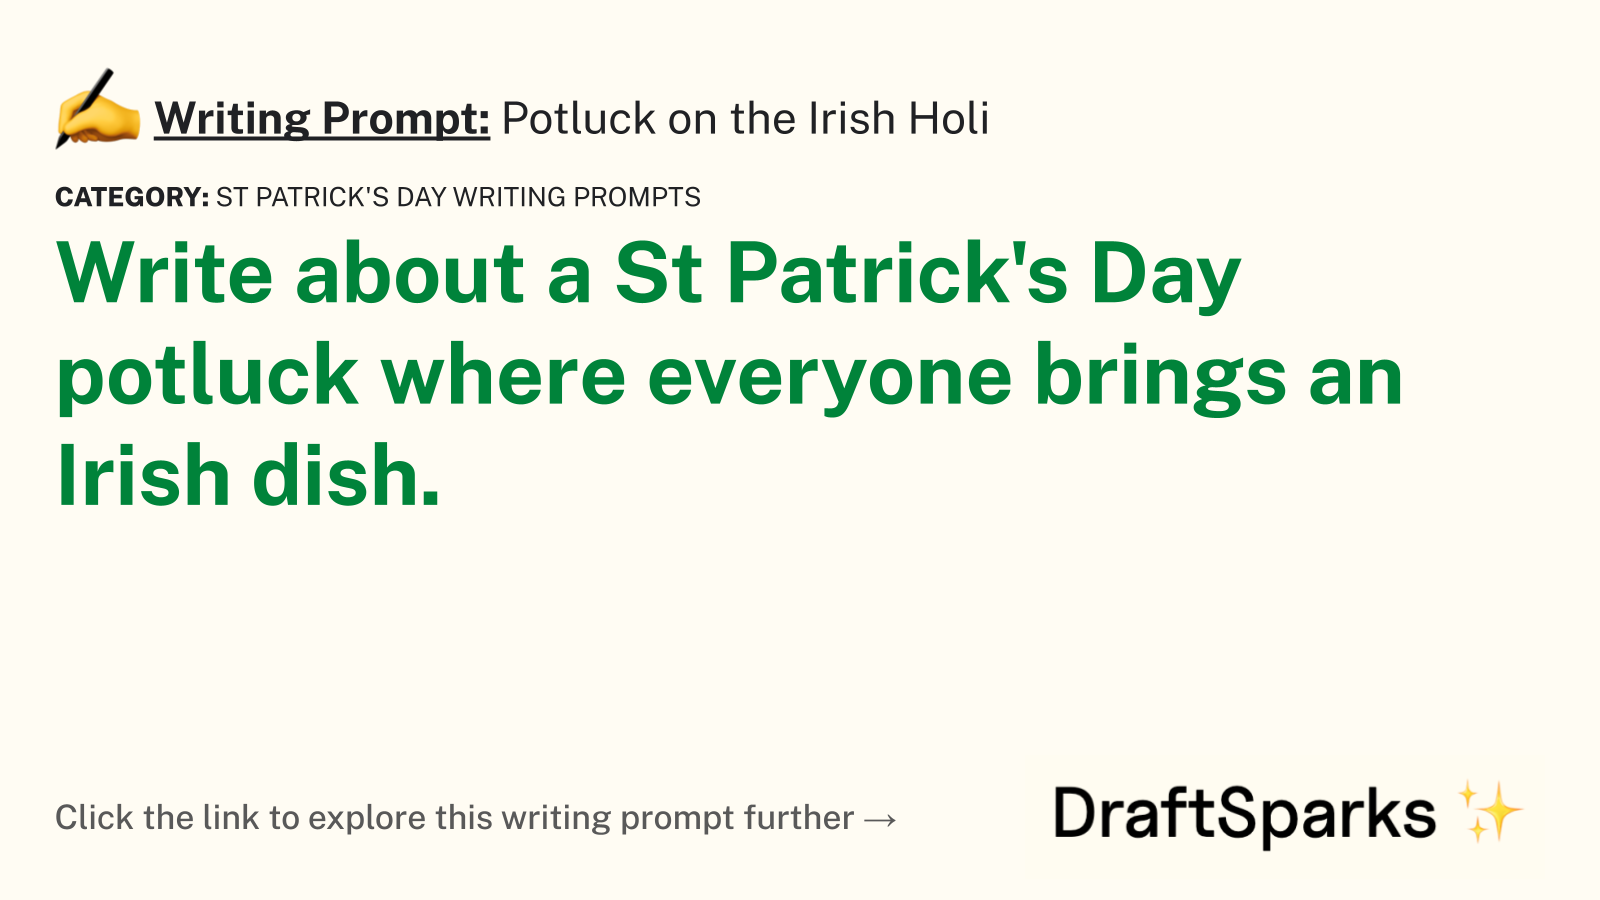 Potluck on the Irish Holi